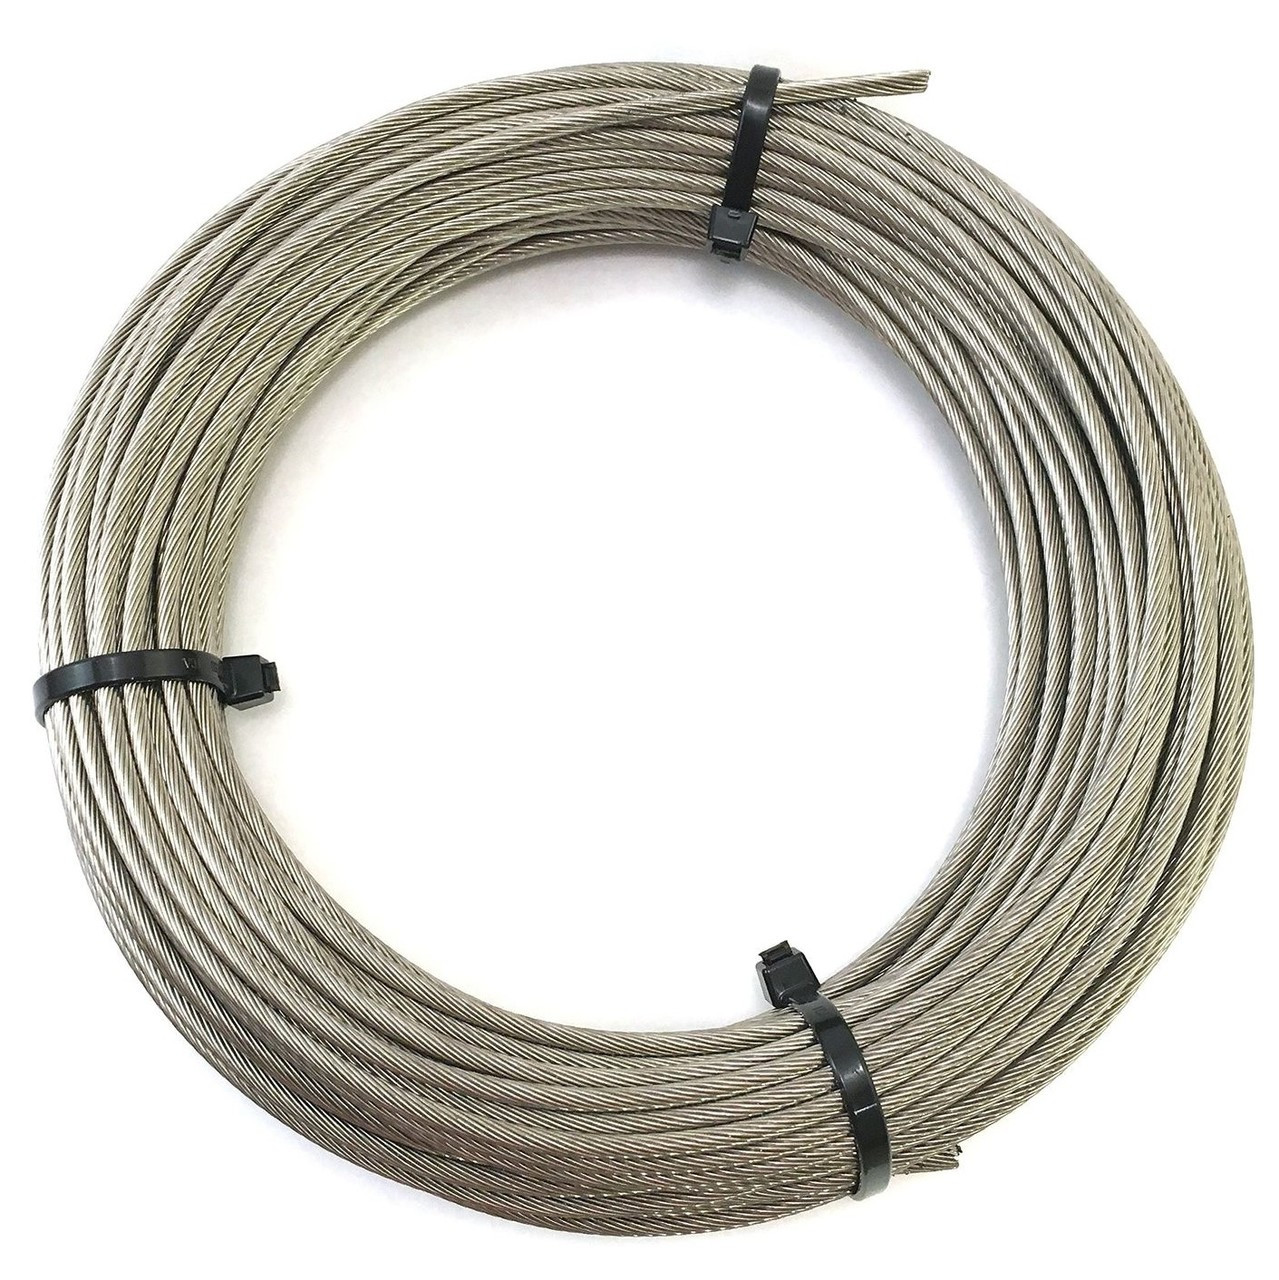 Câble 6mm - 50 mètres, inox 316